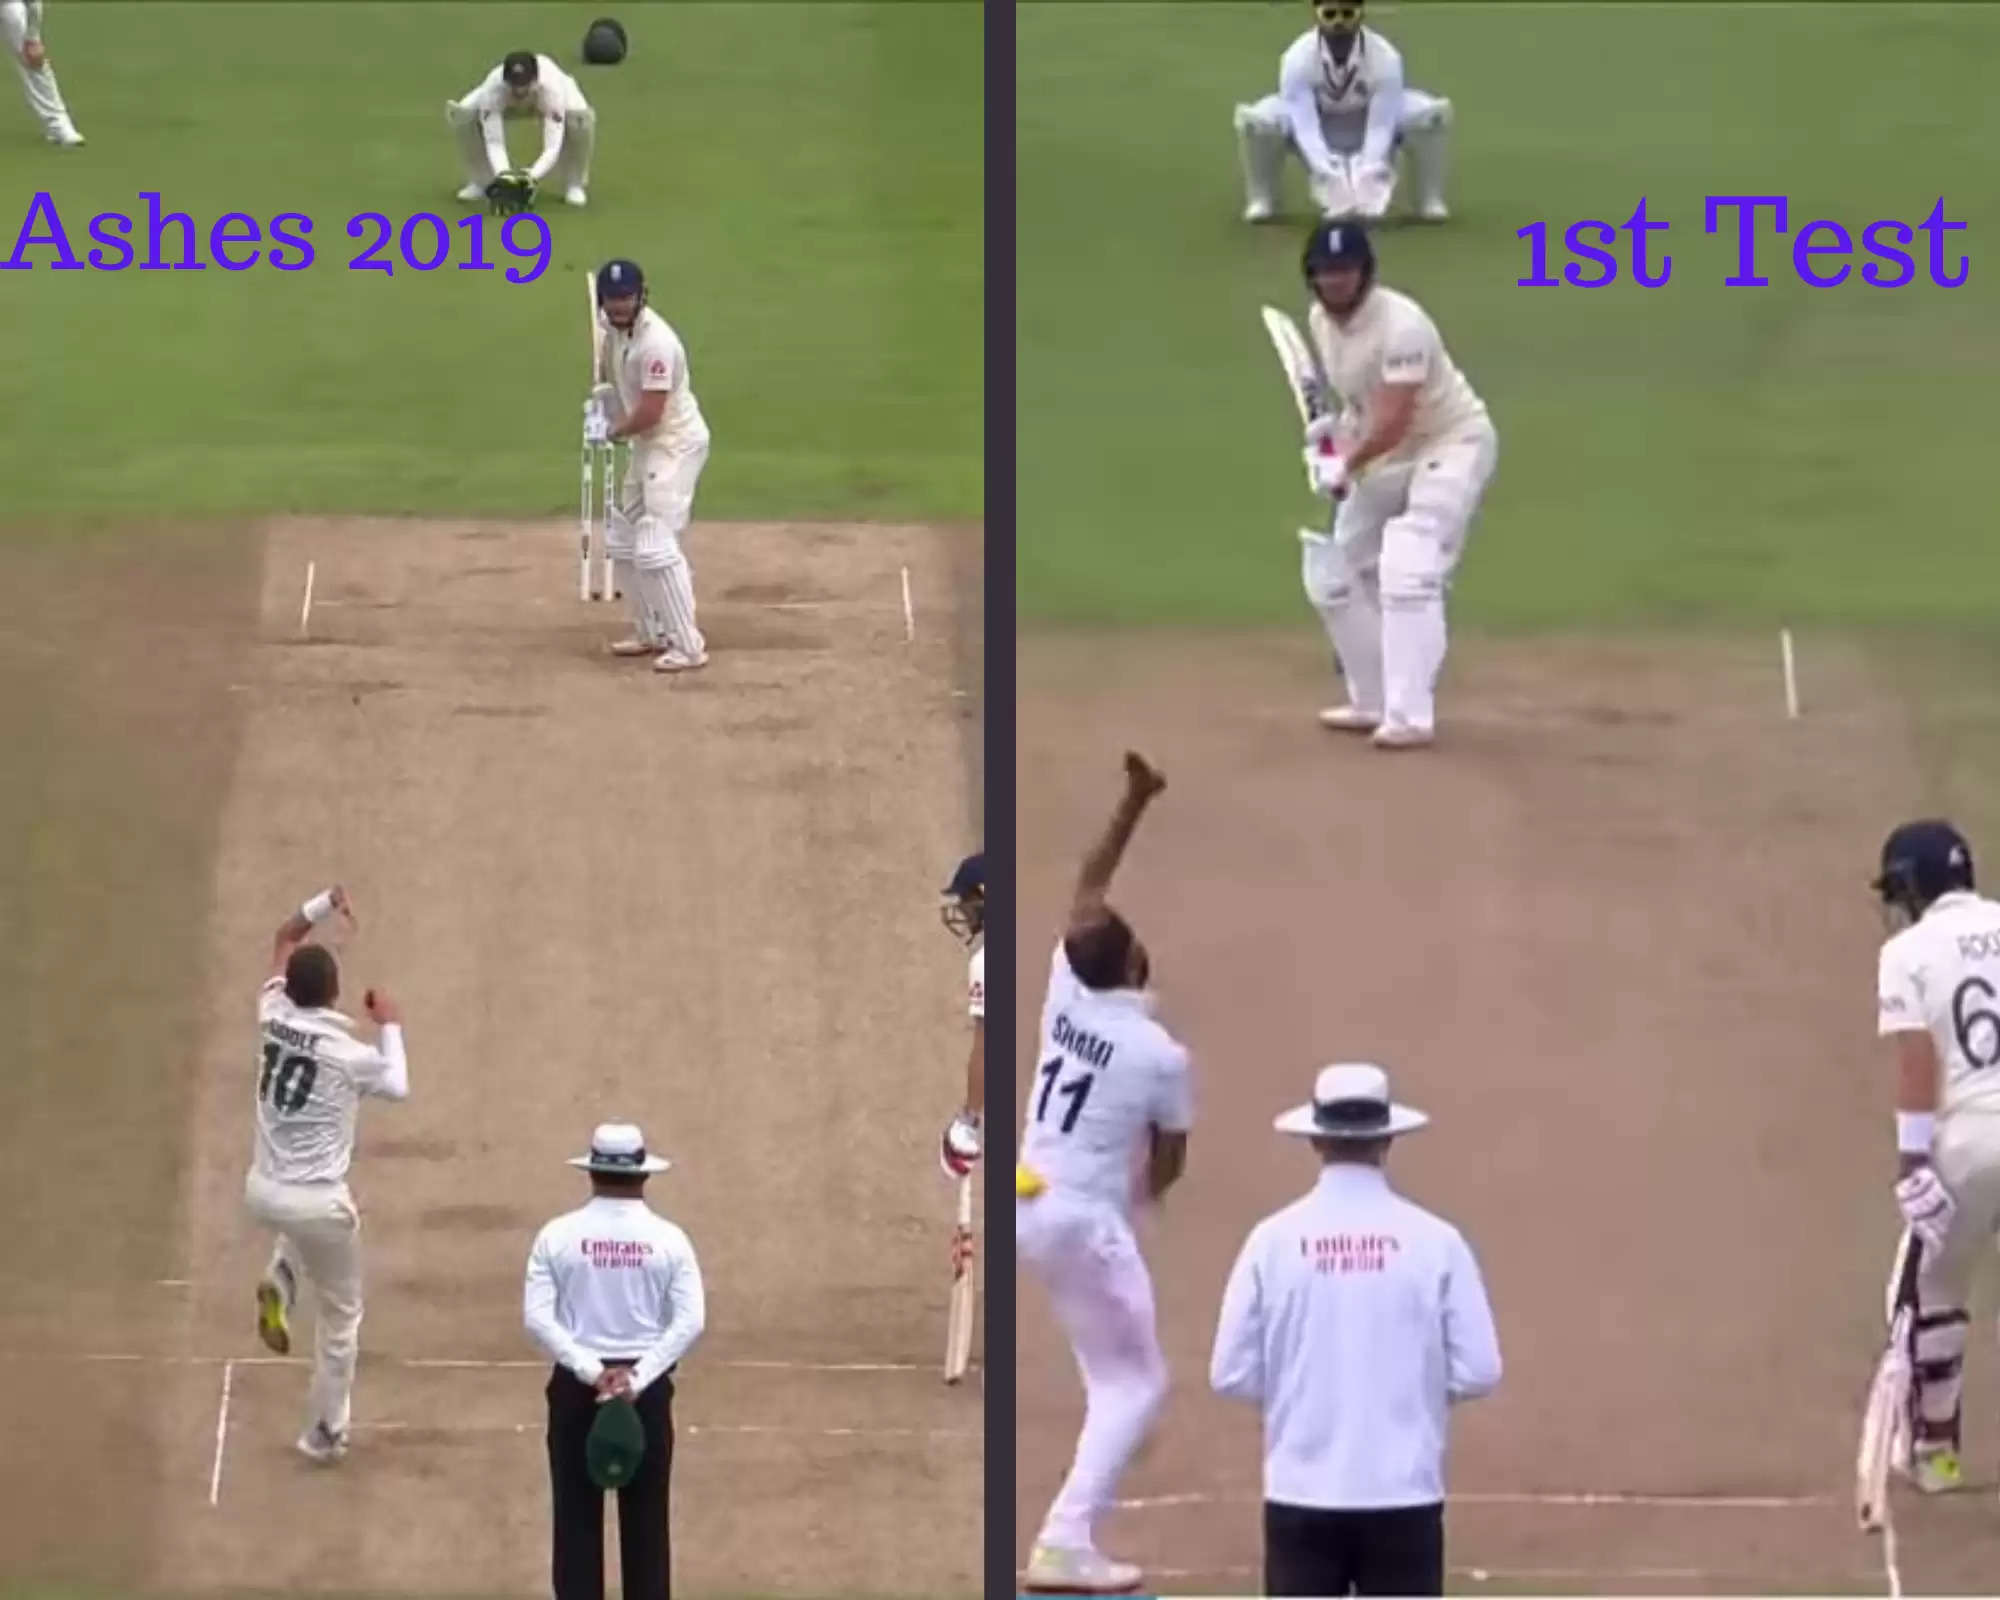 ENG vs IND: Jonny Bairstow, an improved Test batsman